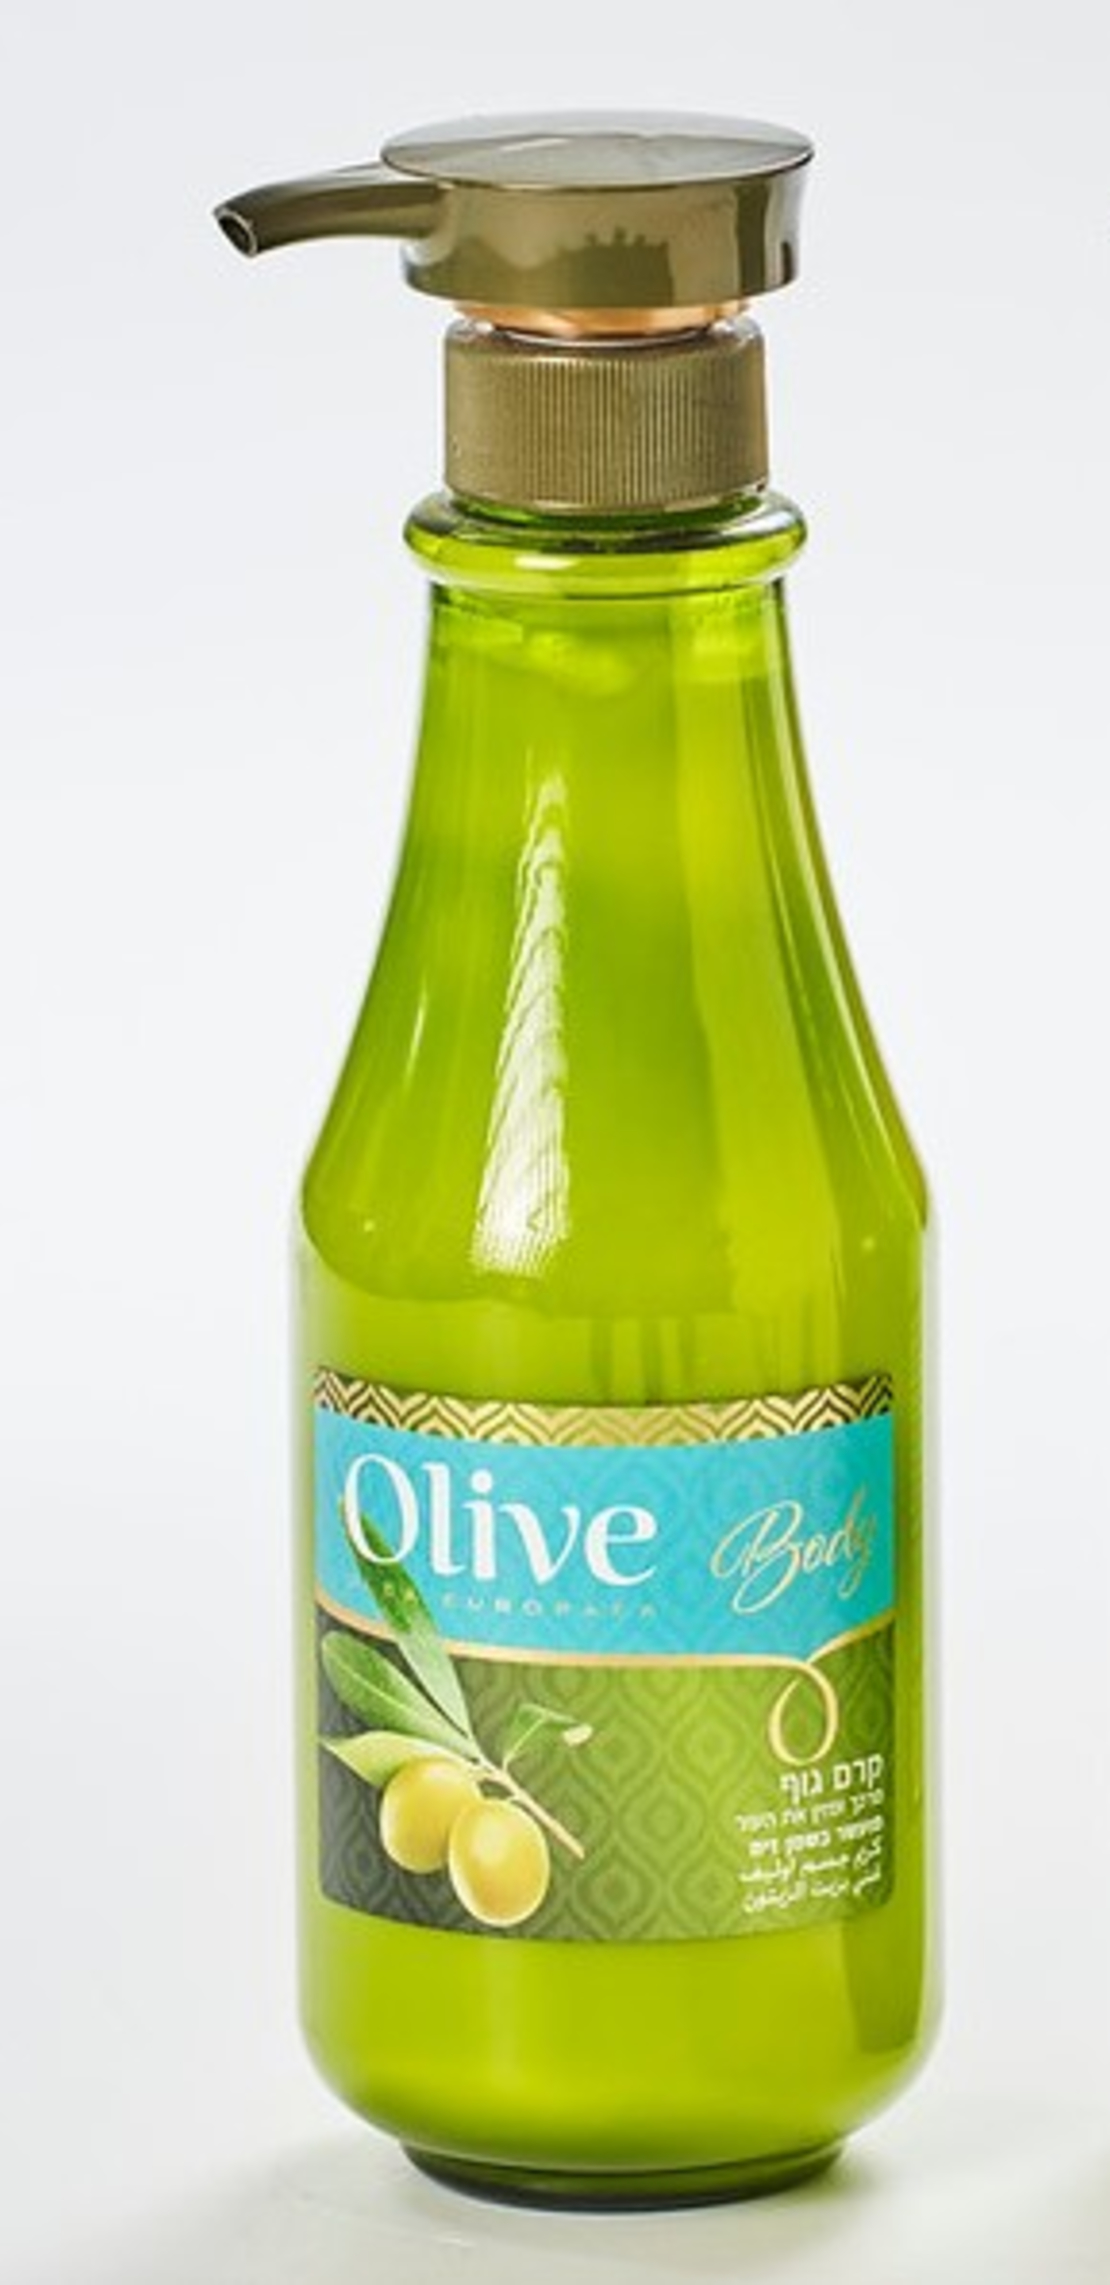 קרם גוף אוליב - Olive